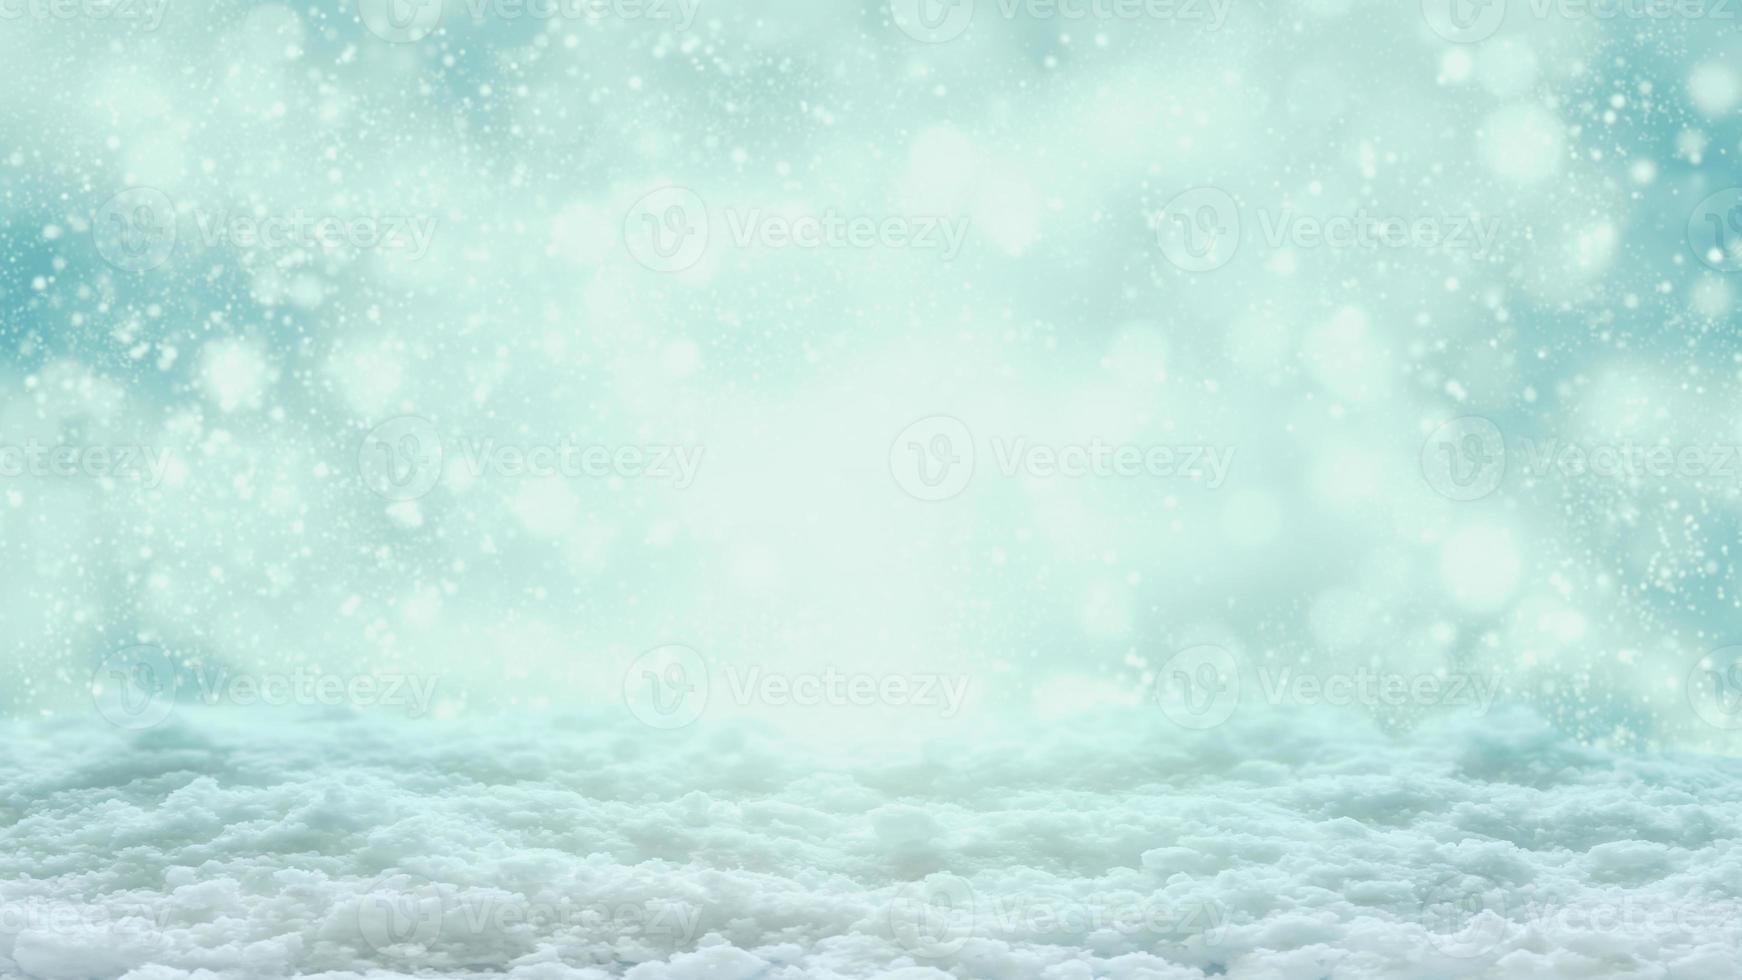 leerer weißer schnee mit schneefallwinternatur-weihnachtshintergrund foto